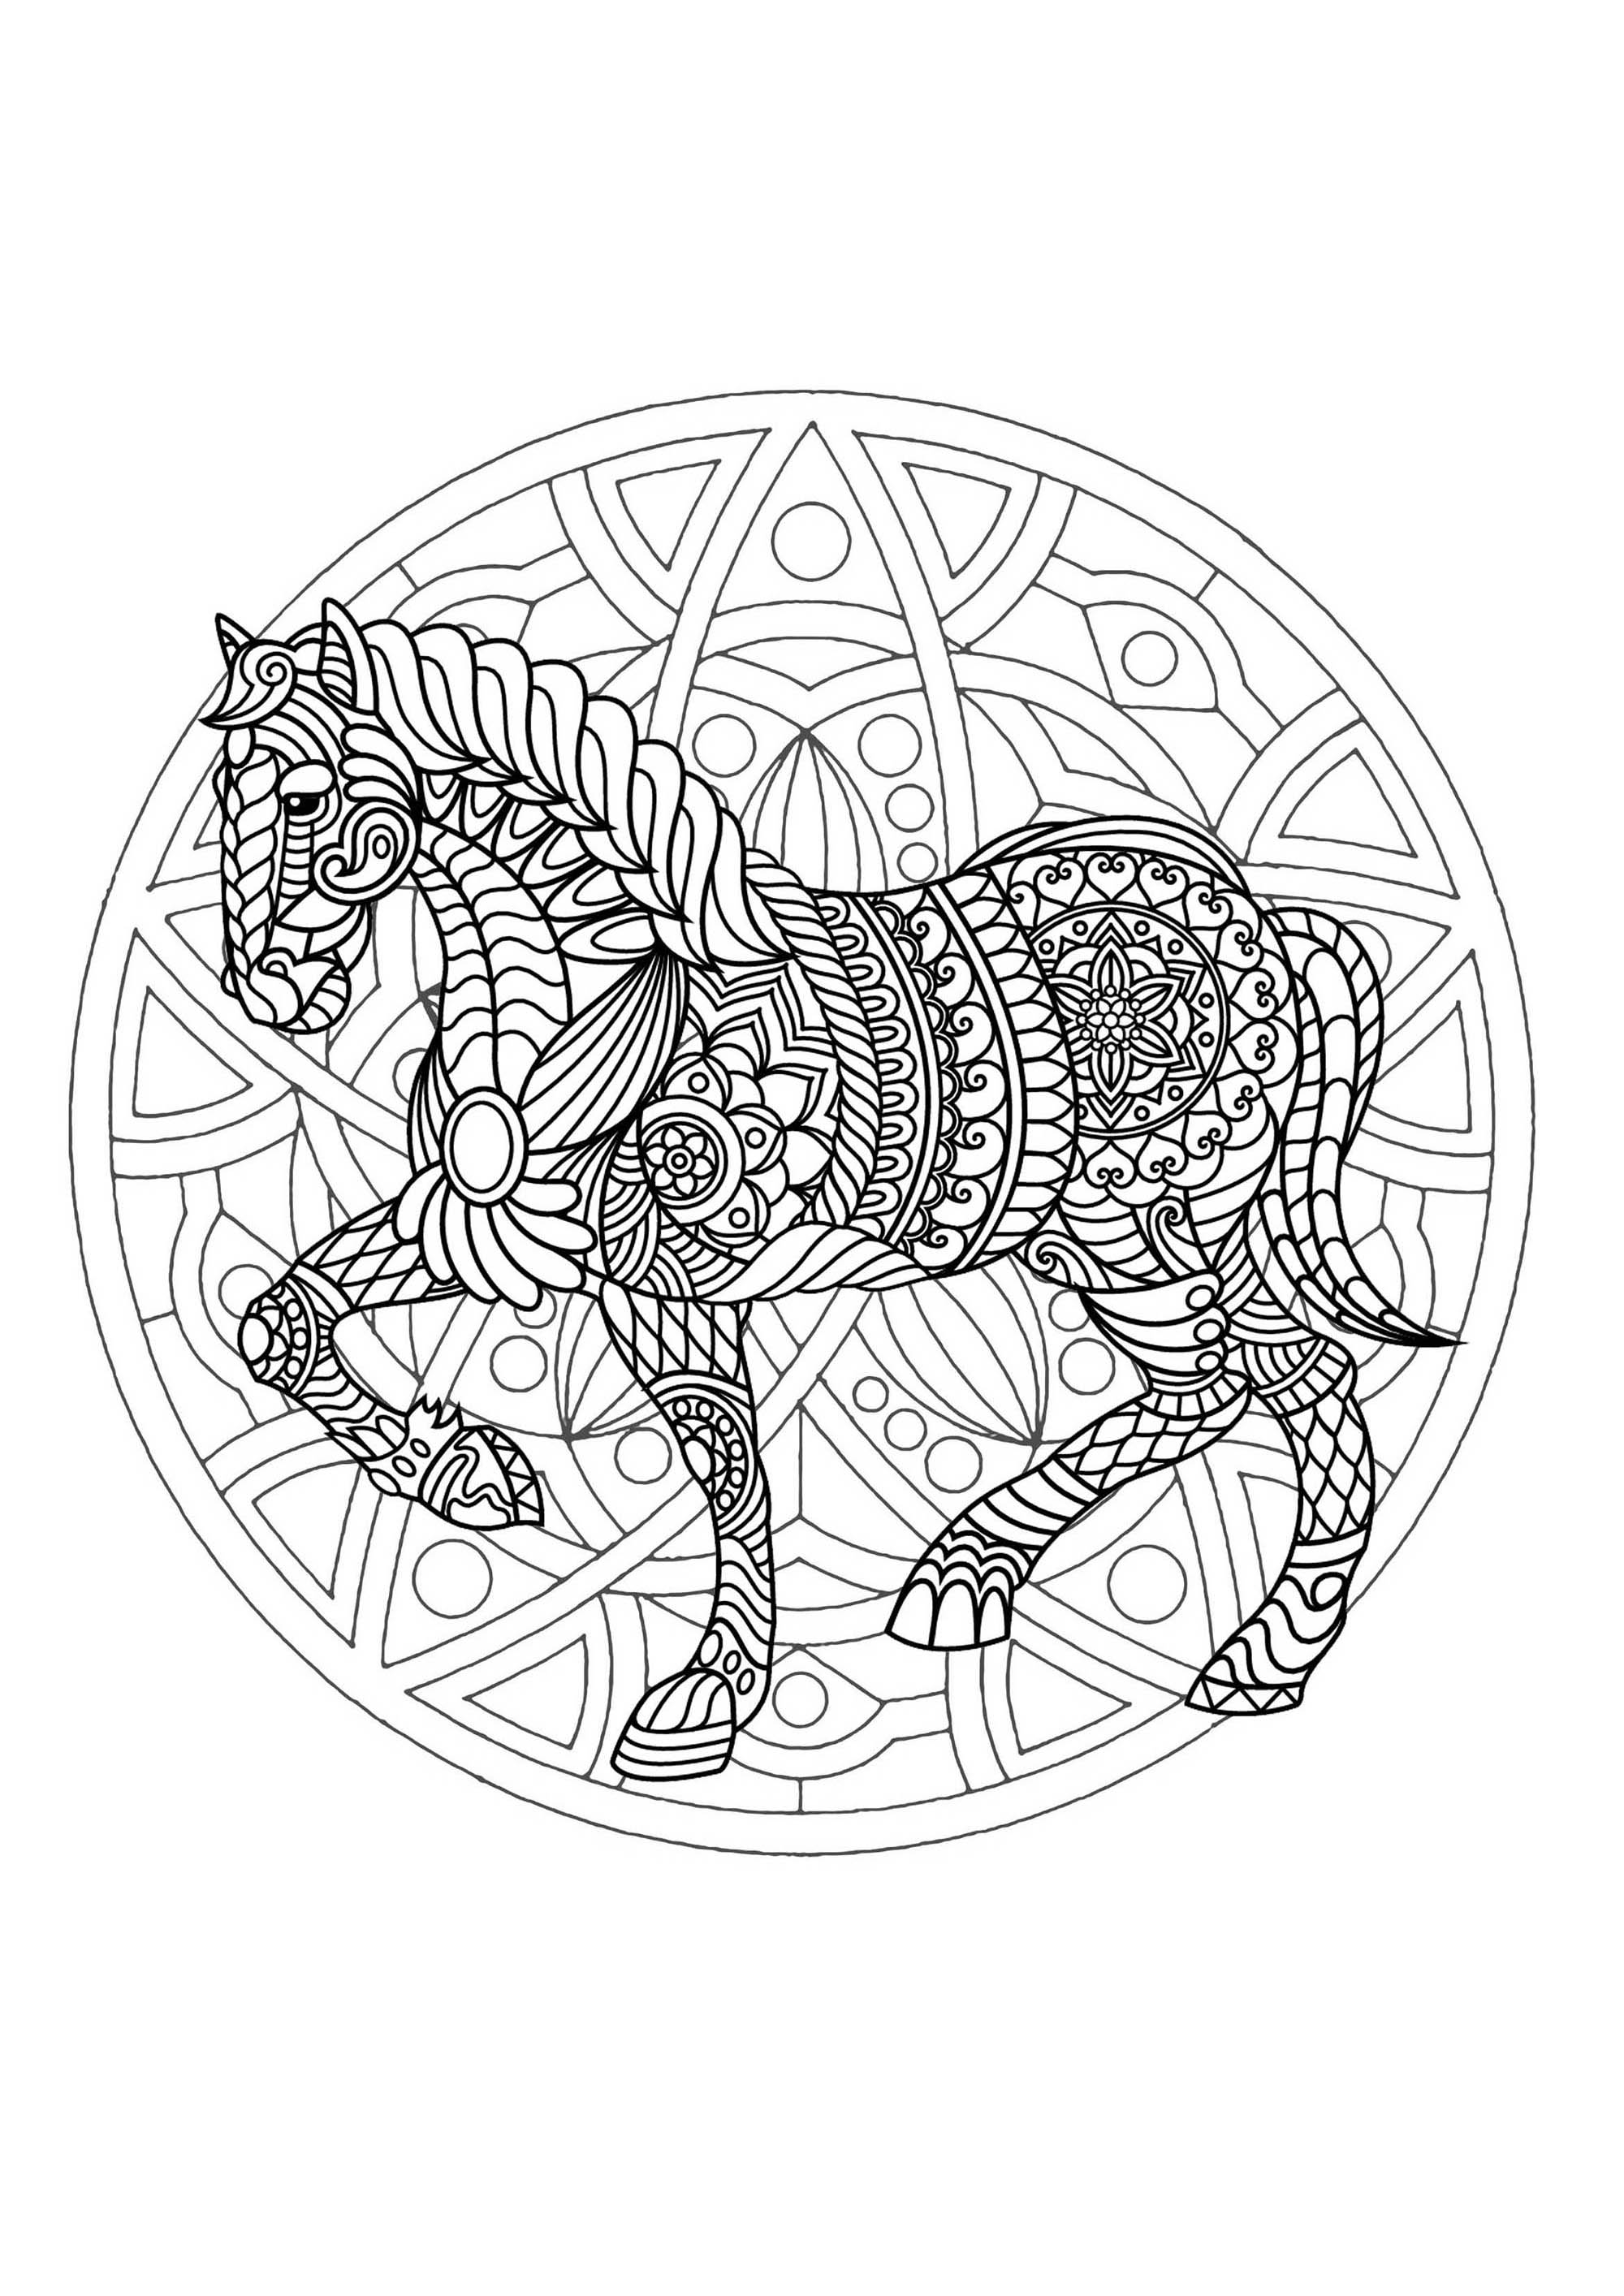 Pferd & Mandala. Ein recht schwierig auszumalendes Mandala, das perfekt ist, wenn Sie gerne kleine Bereiche farbig gestalten und verschiedene Details mögen.